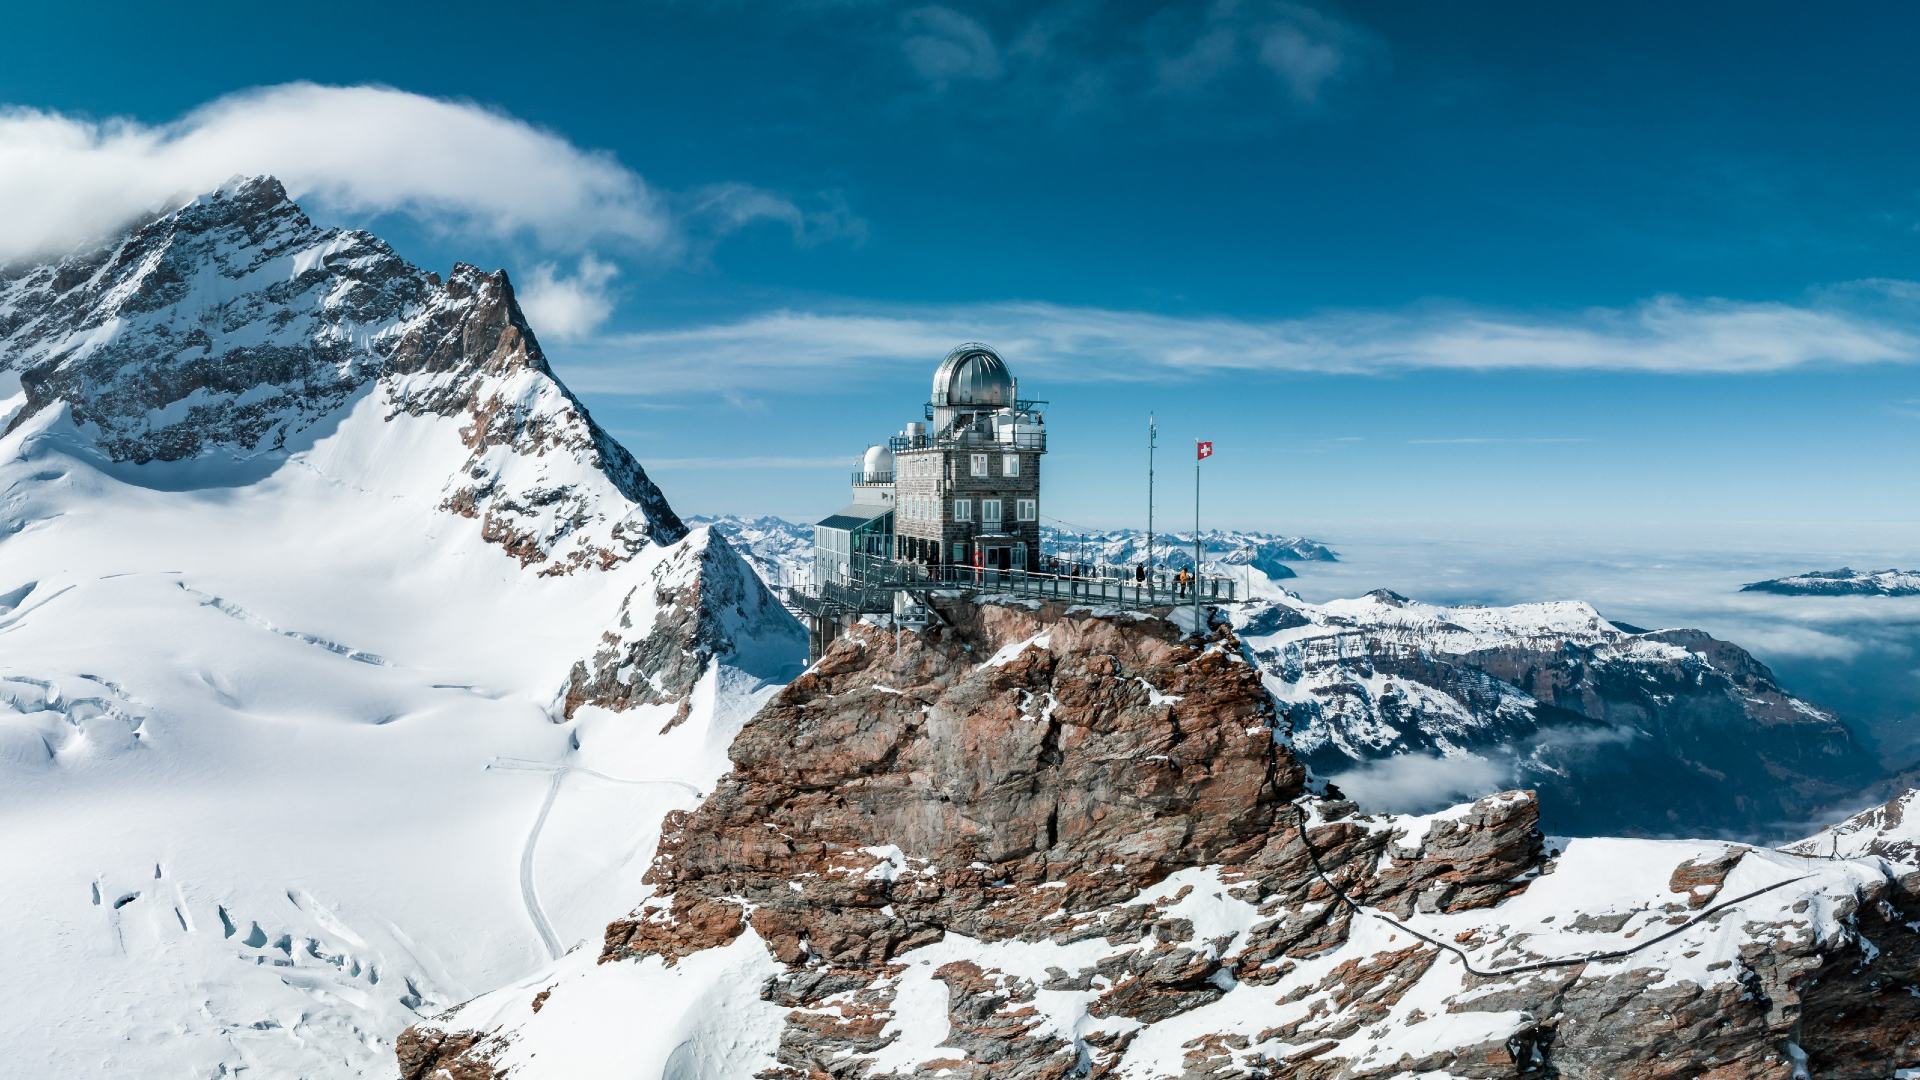 Jungfraujoch (aka the Top of Europe), Bernese Oberland, Switzerland